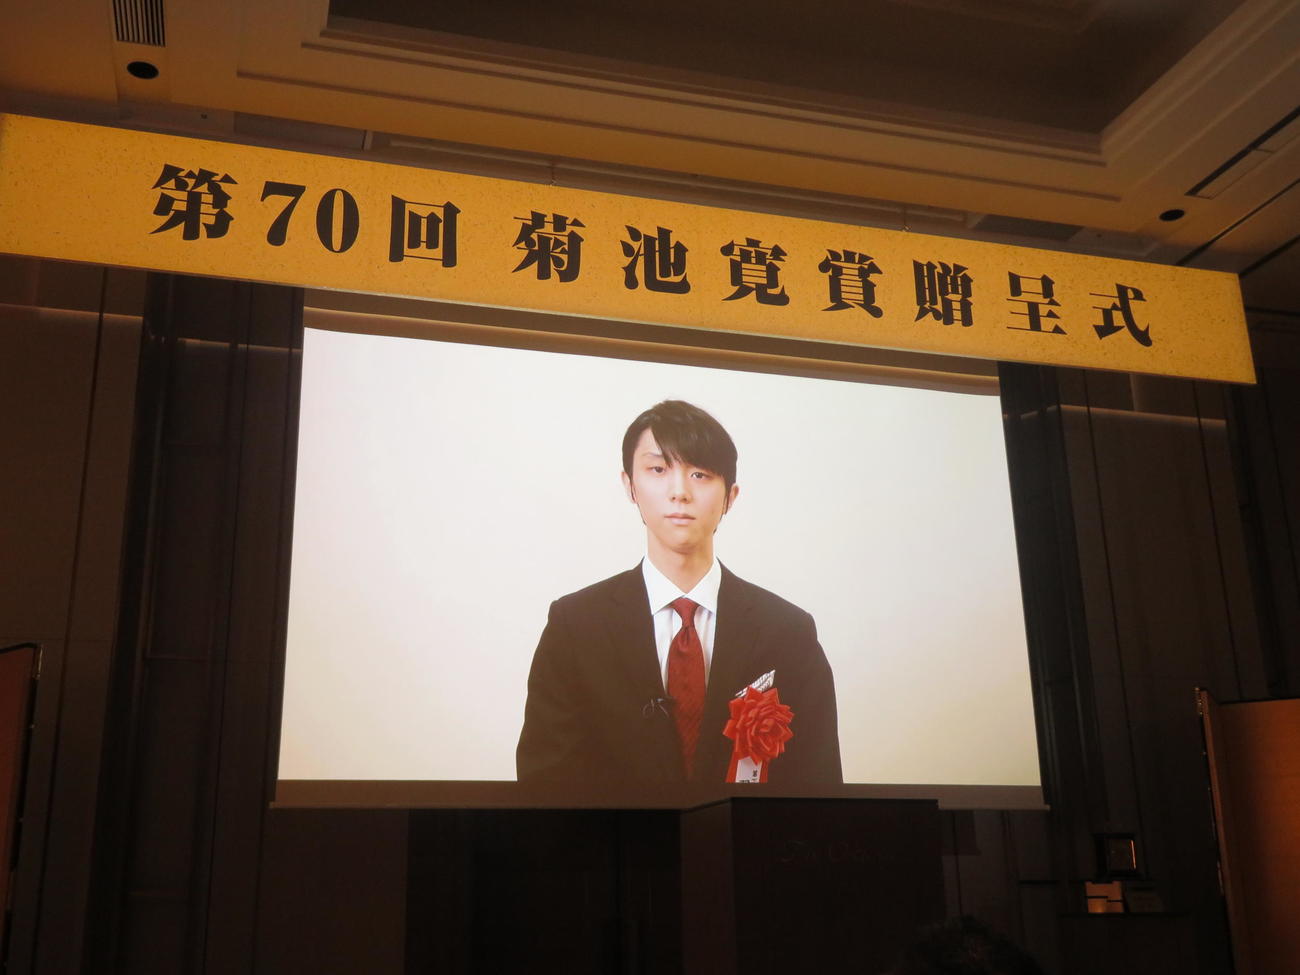 「第七十回菊池寛賞」贈呈式では受賞した羽生結弦さんからのビデオメッセージが流された